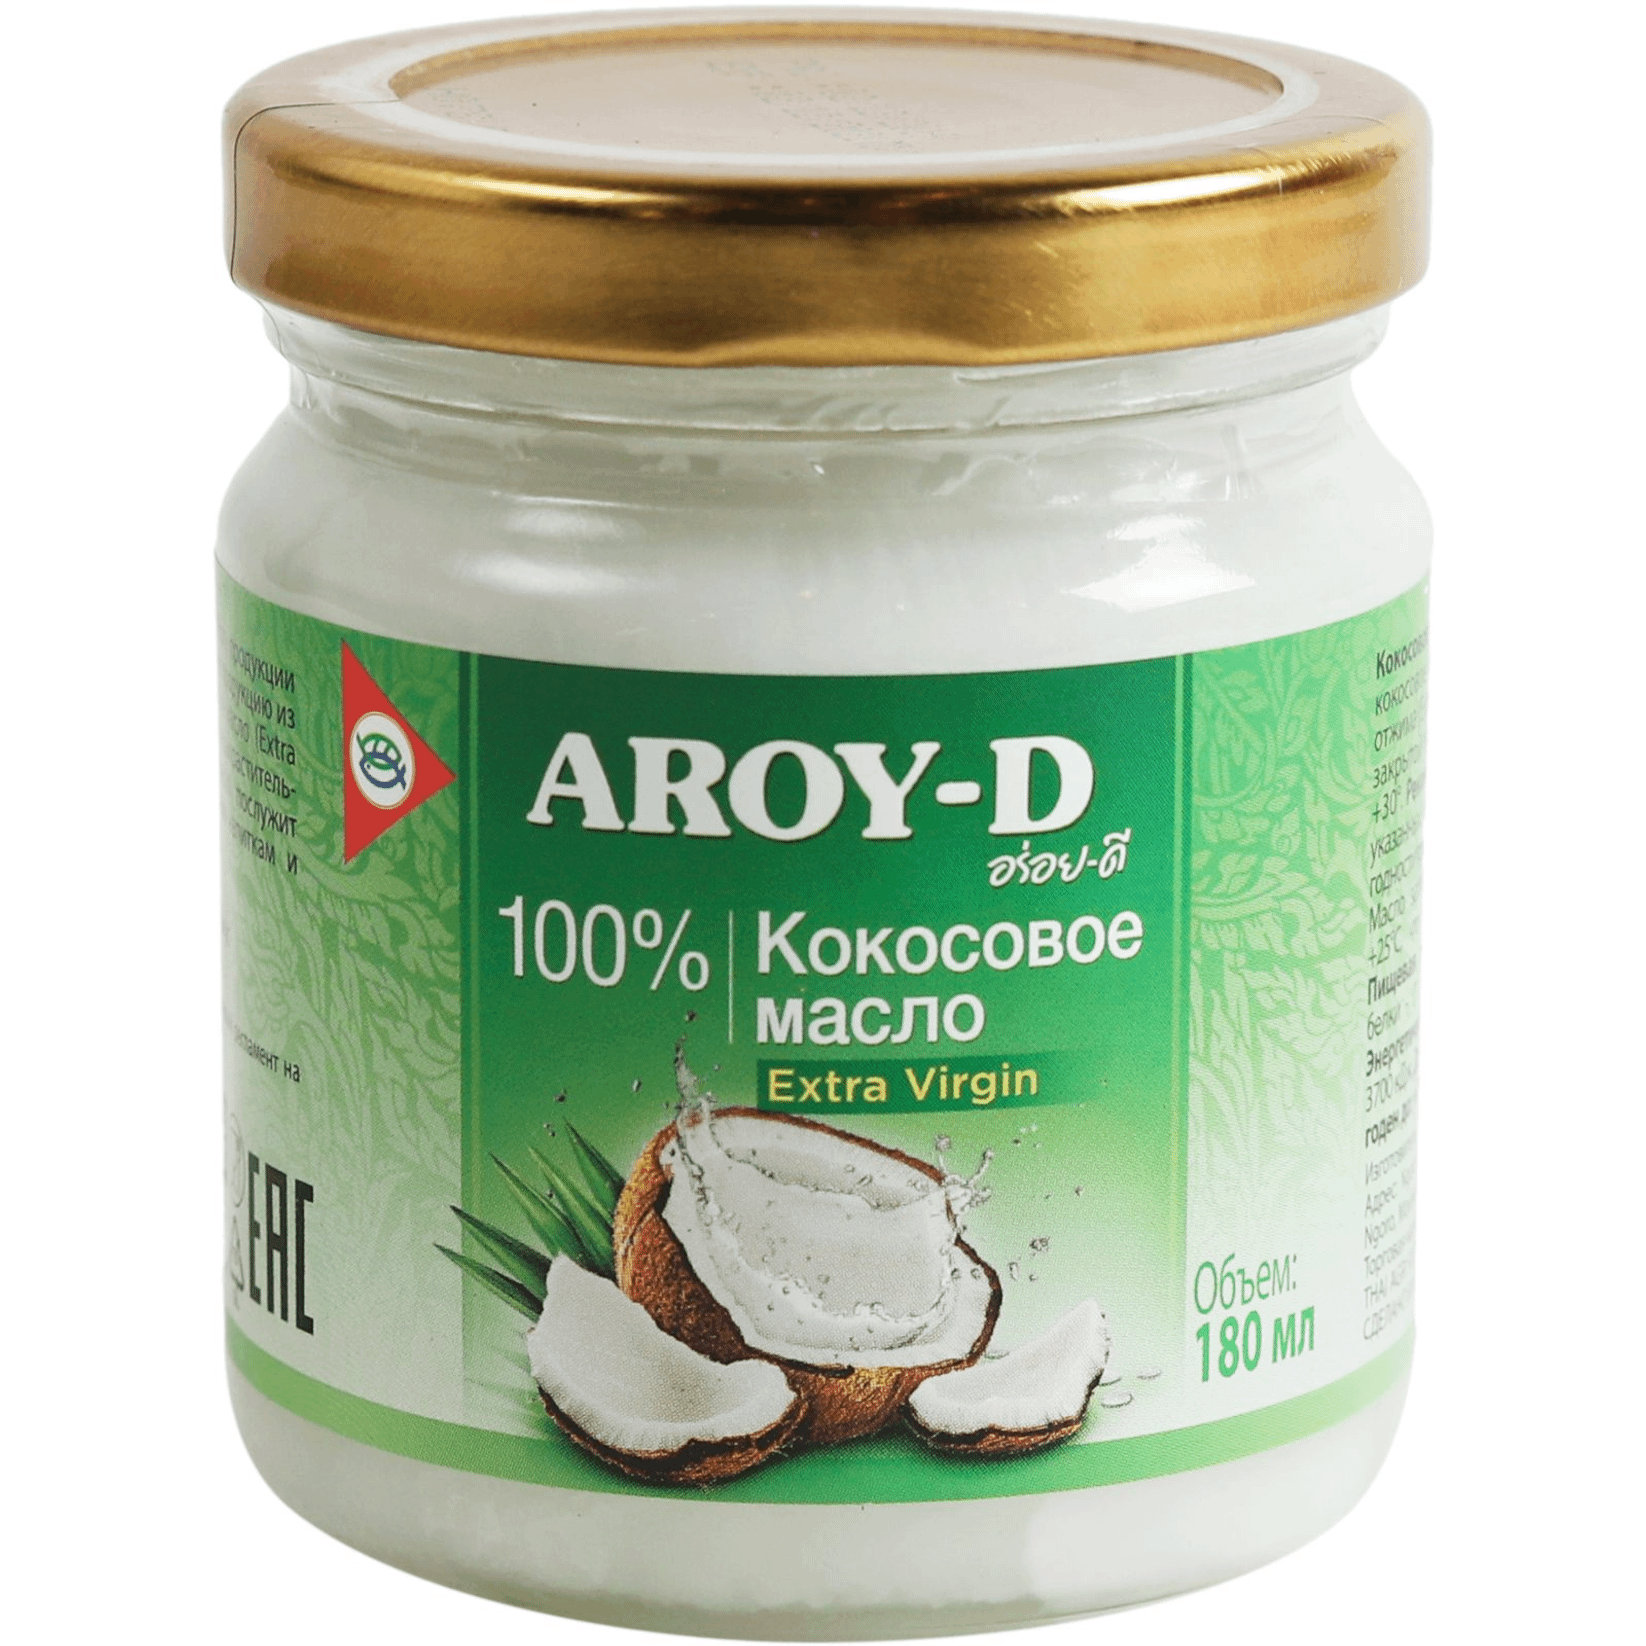 AROY-D Кокосовое масло extra virgin 100% , 180 мл